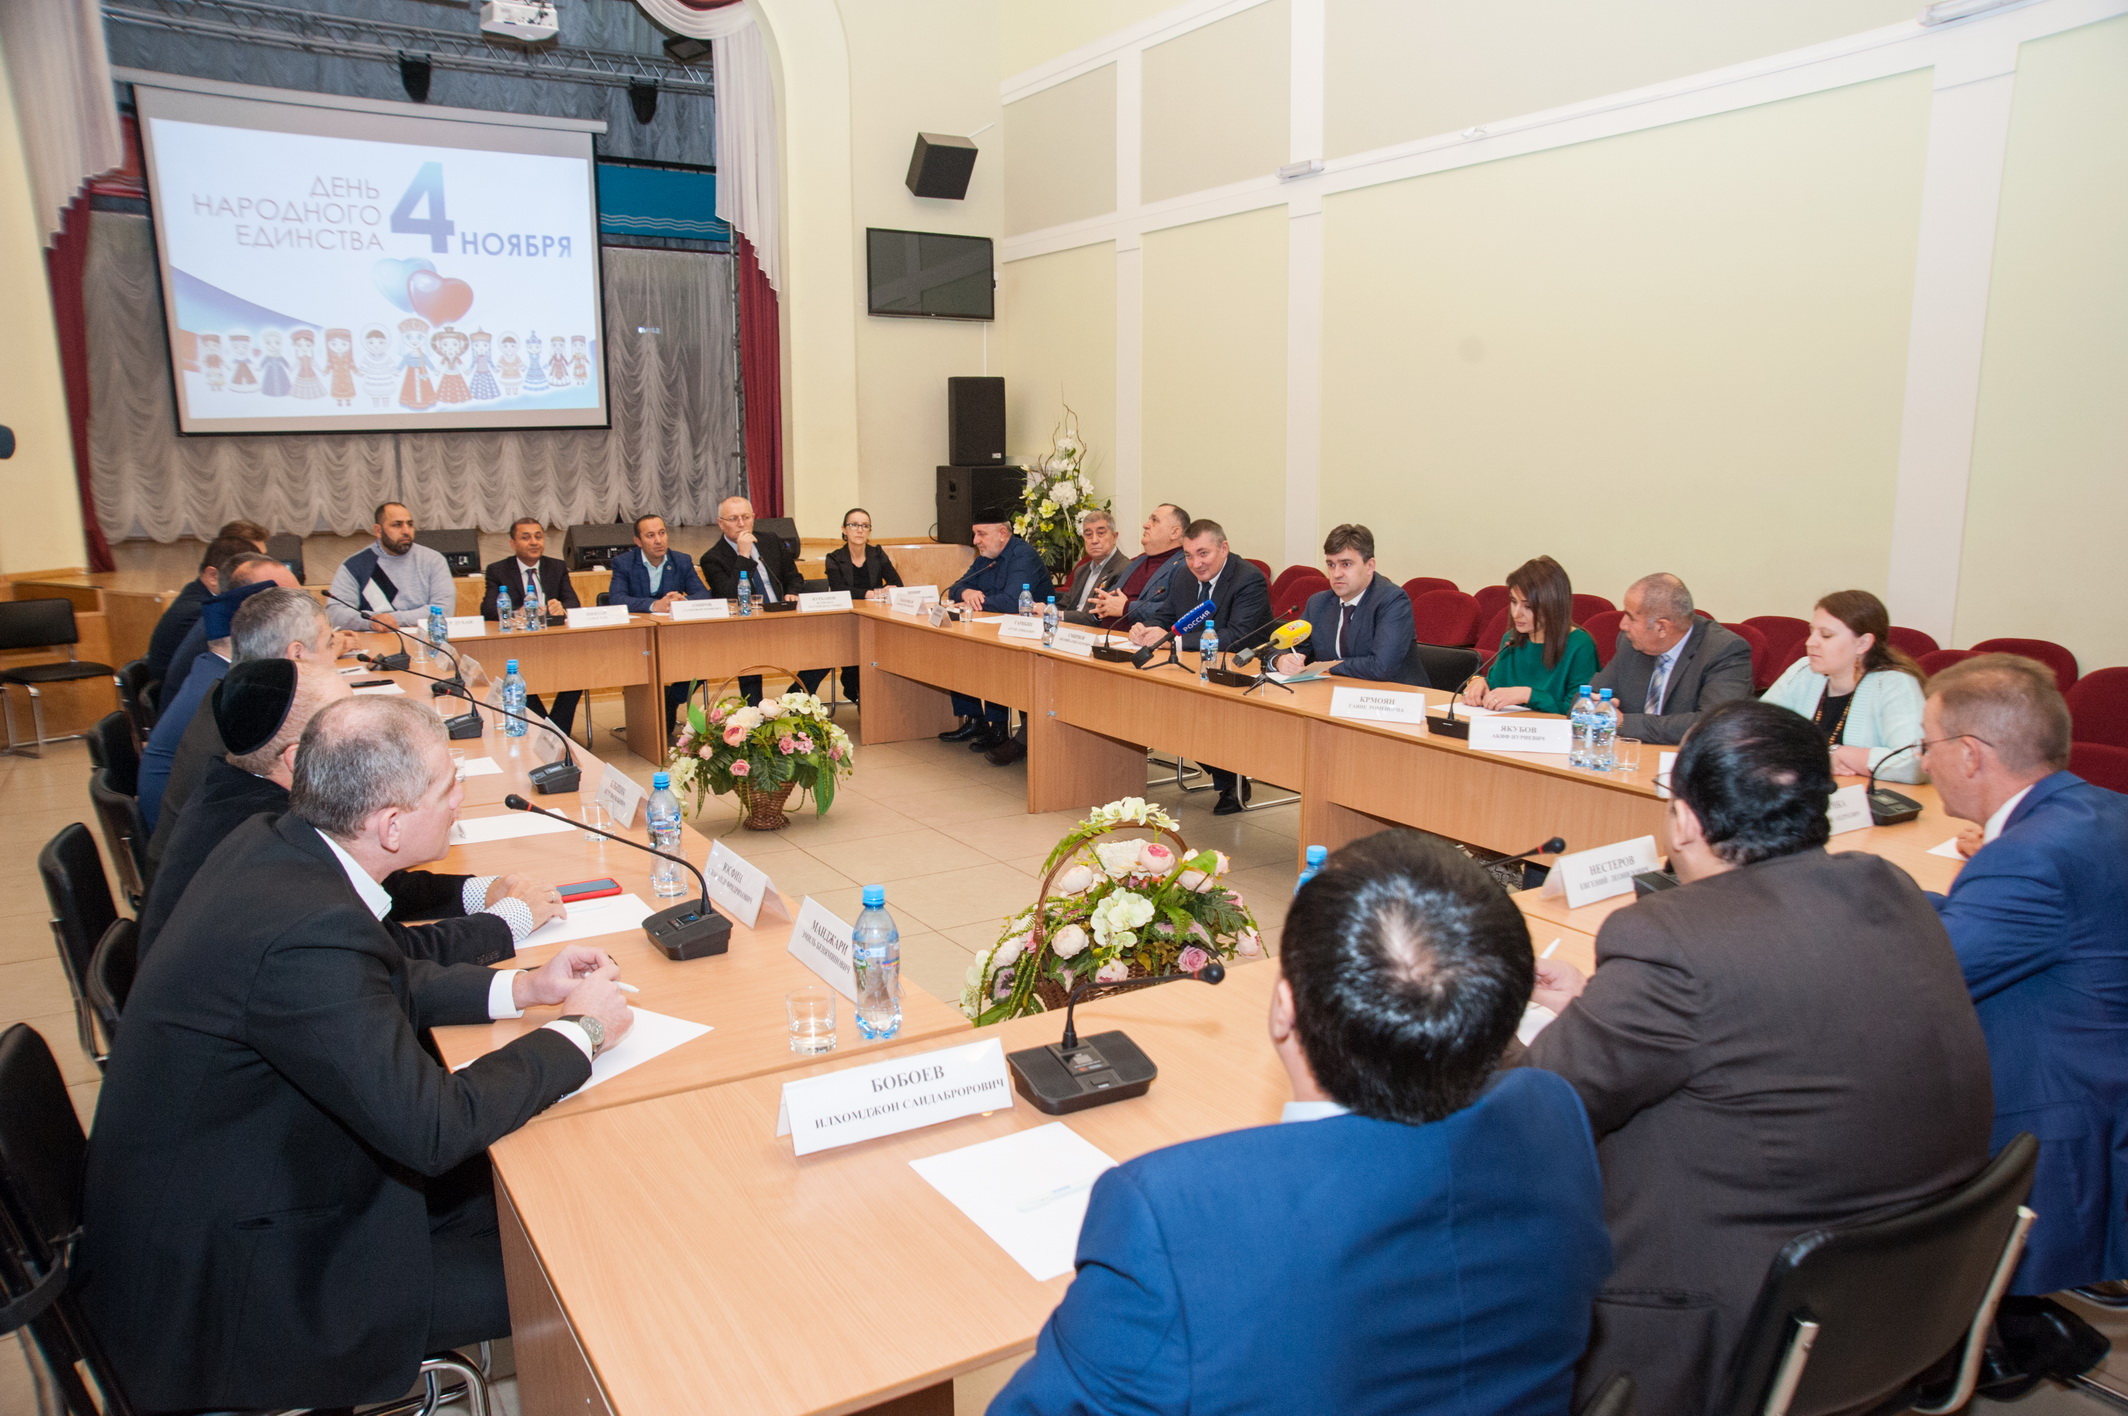 Станислав Воскресенский и представители национальных объединений обсудили вопросы развития Ивановской области